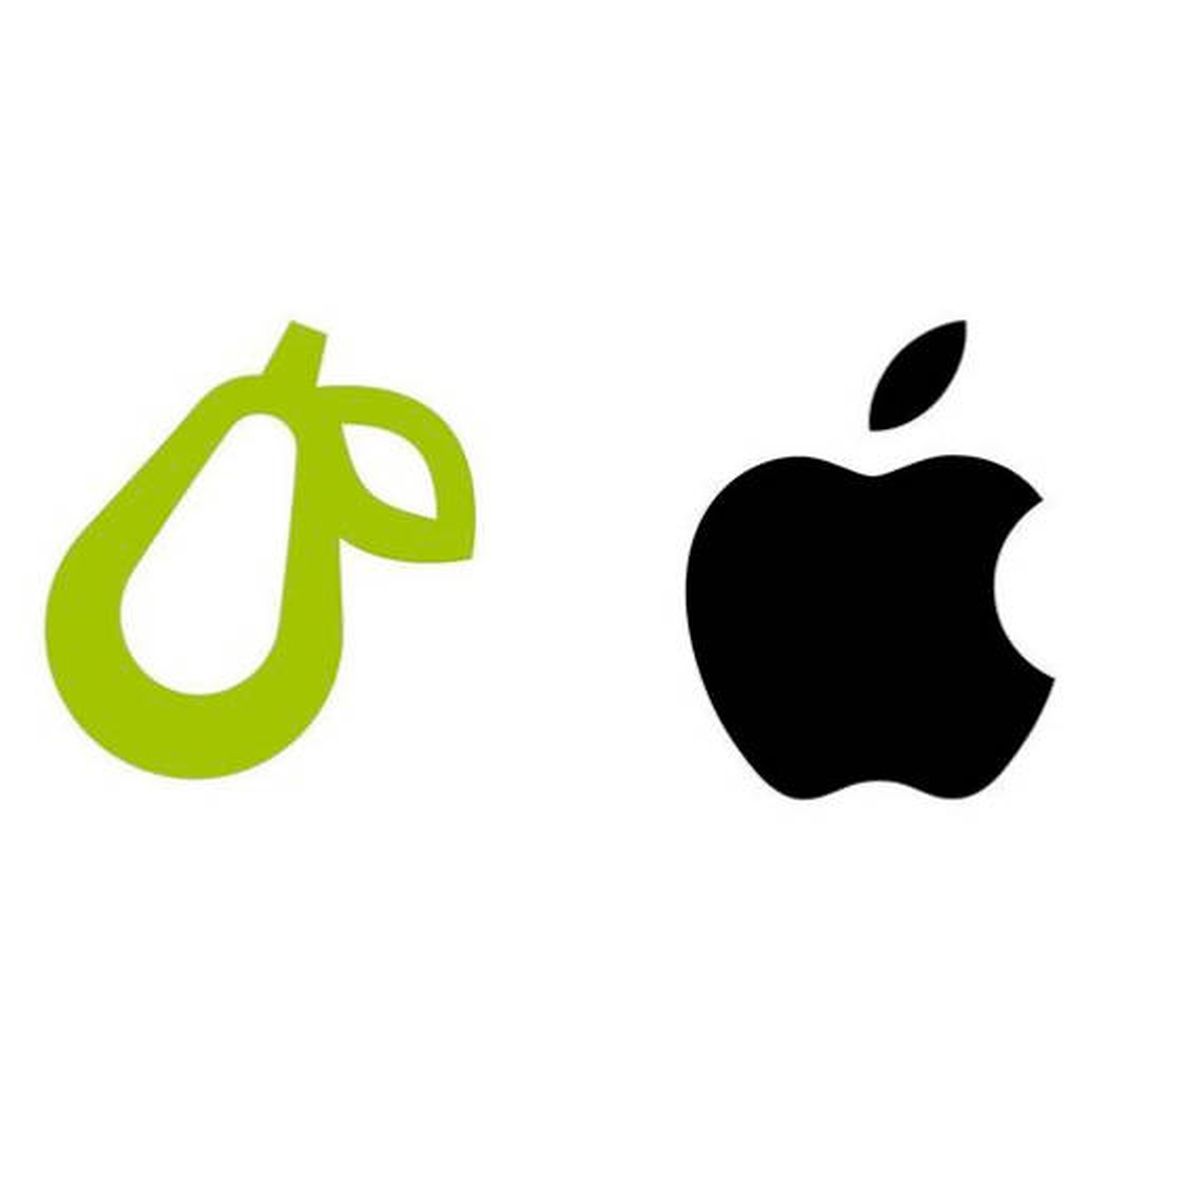 Apple demanda a un blog porque la pera de su logo 